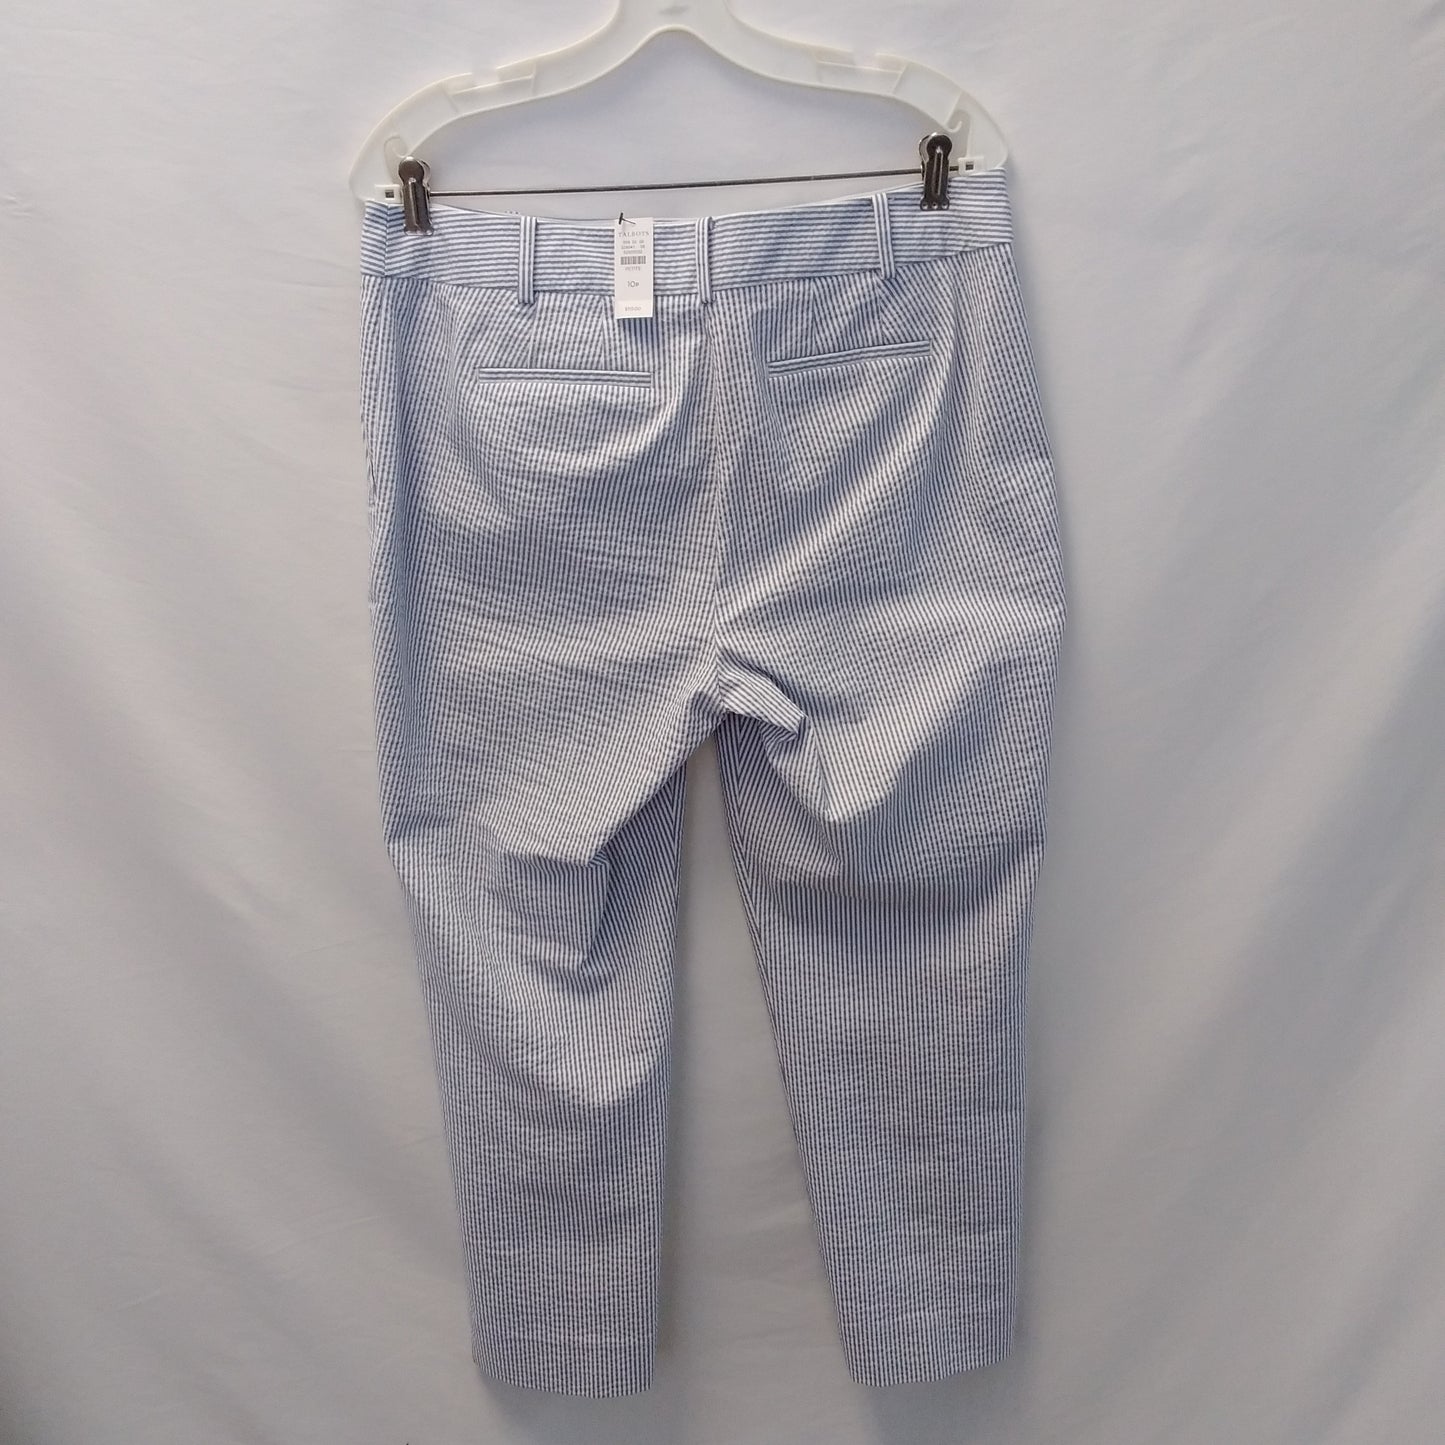 NWT - Talbots Petite Women's Blue Striped Blazer and Pants - Pants size: 10 Blazer size: 12